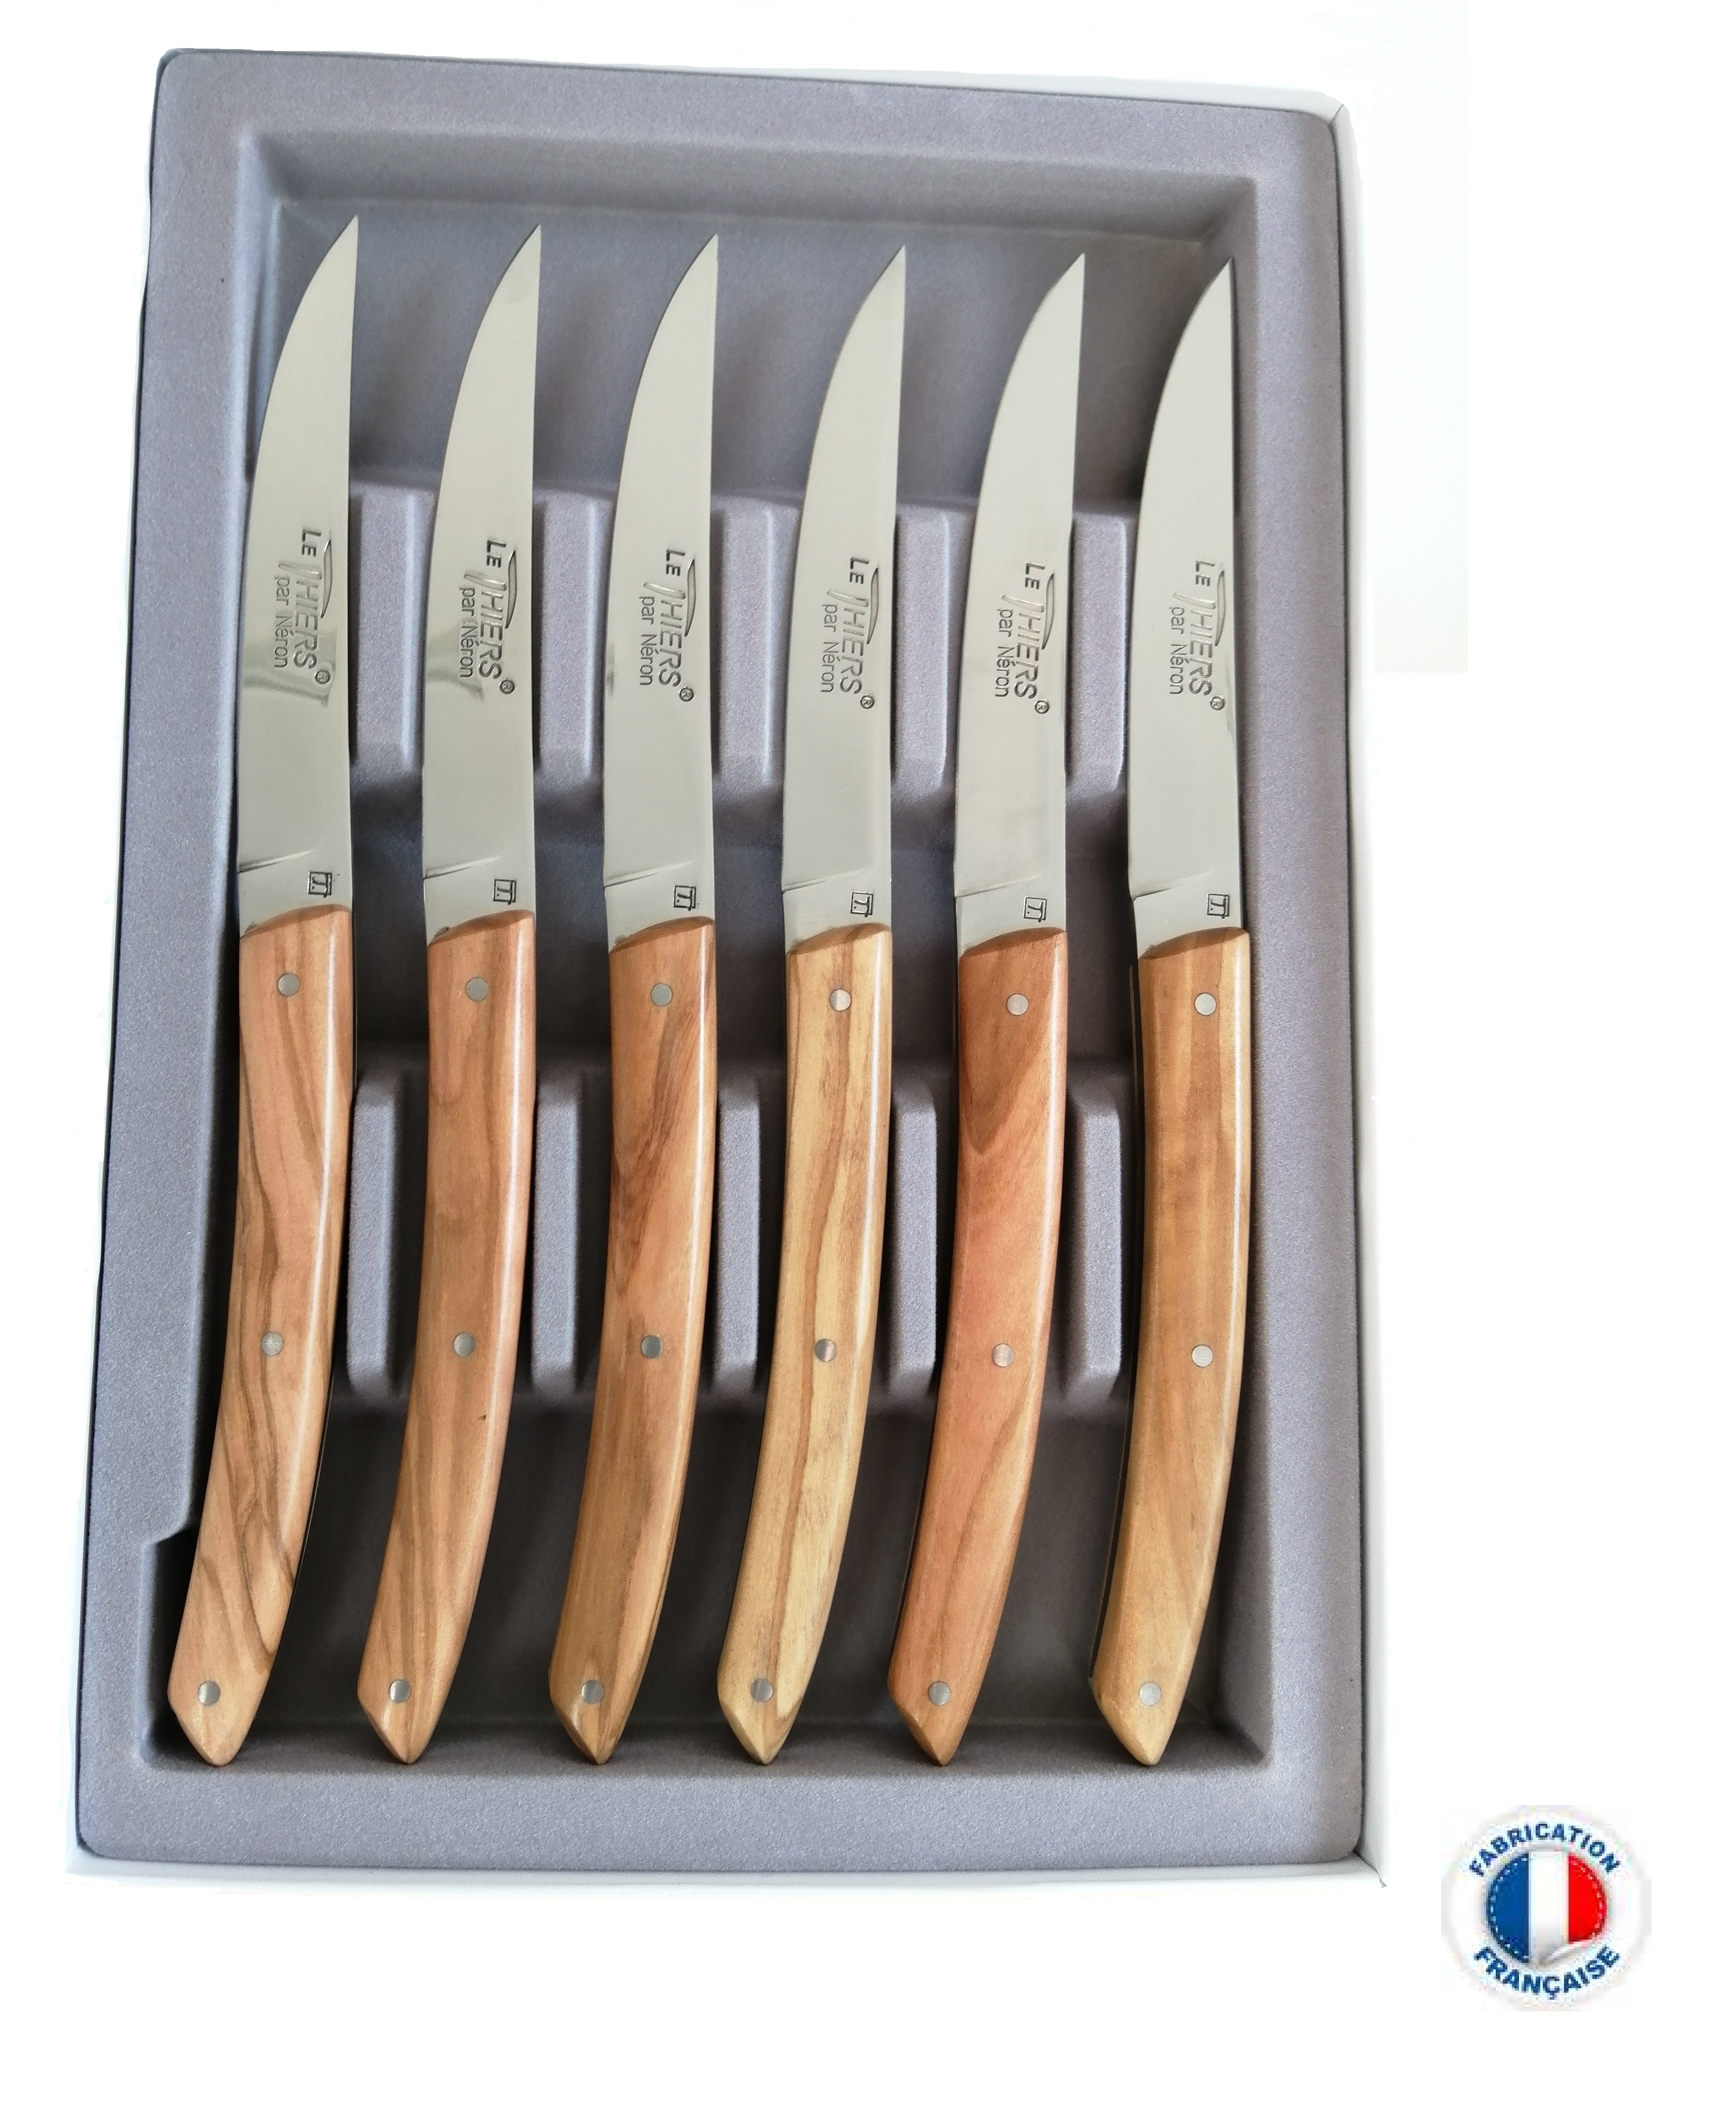 Coffret 6 couteaux de table 21cm Le Thiers manche olivier AU SABOT